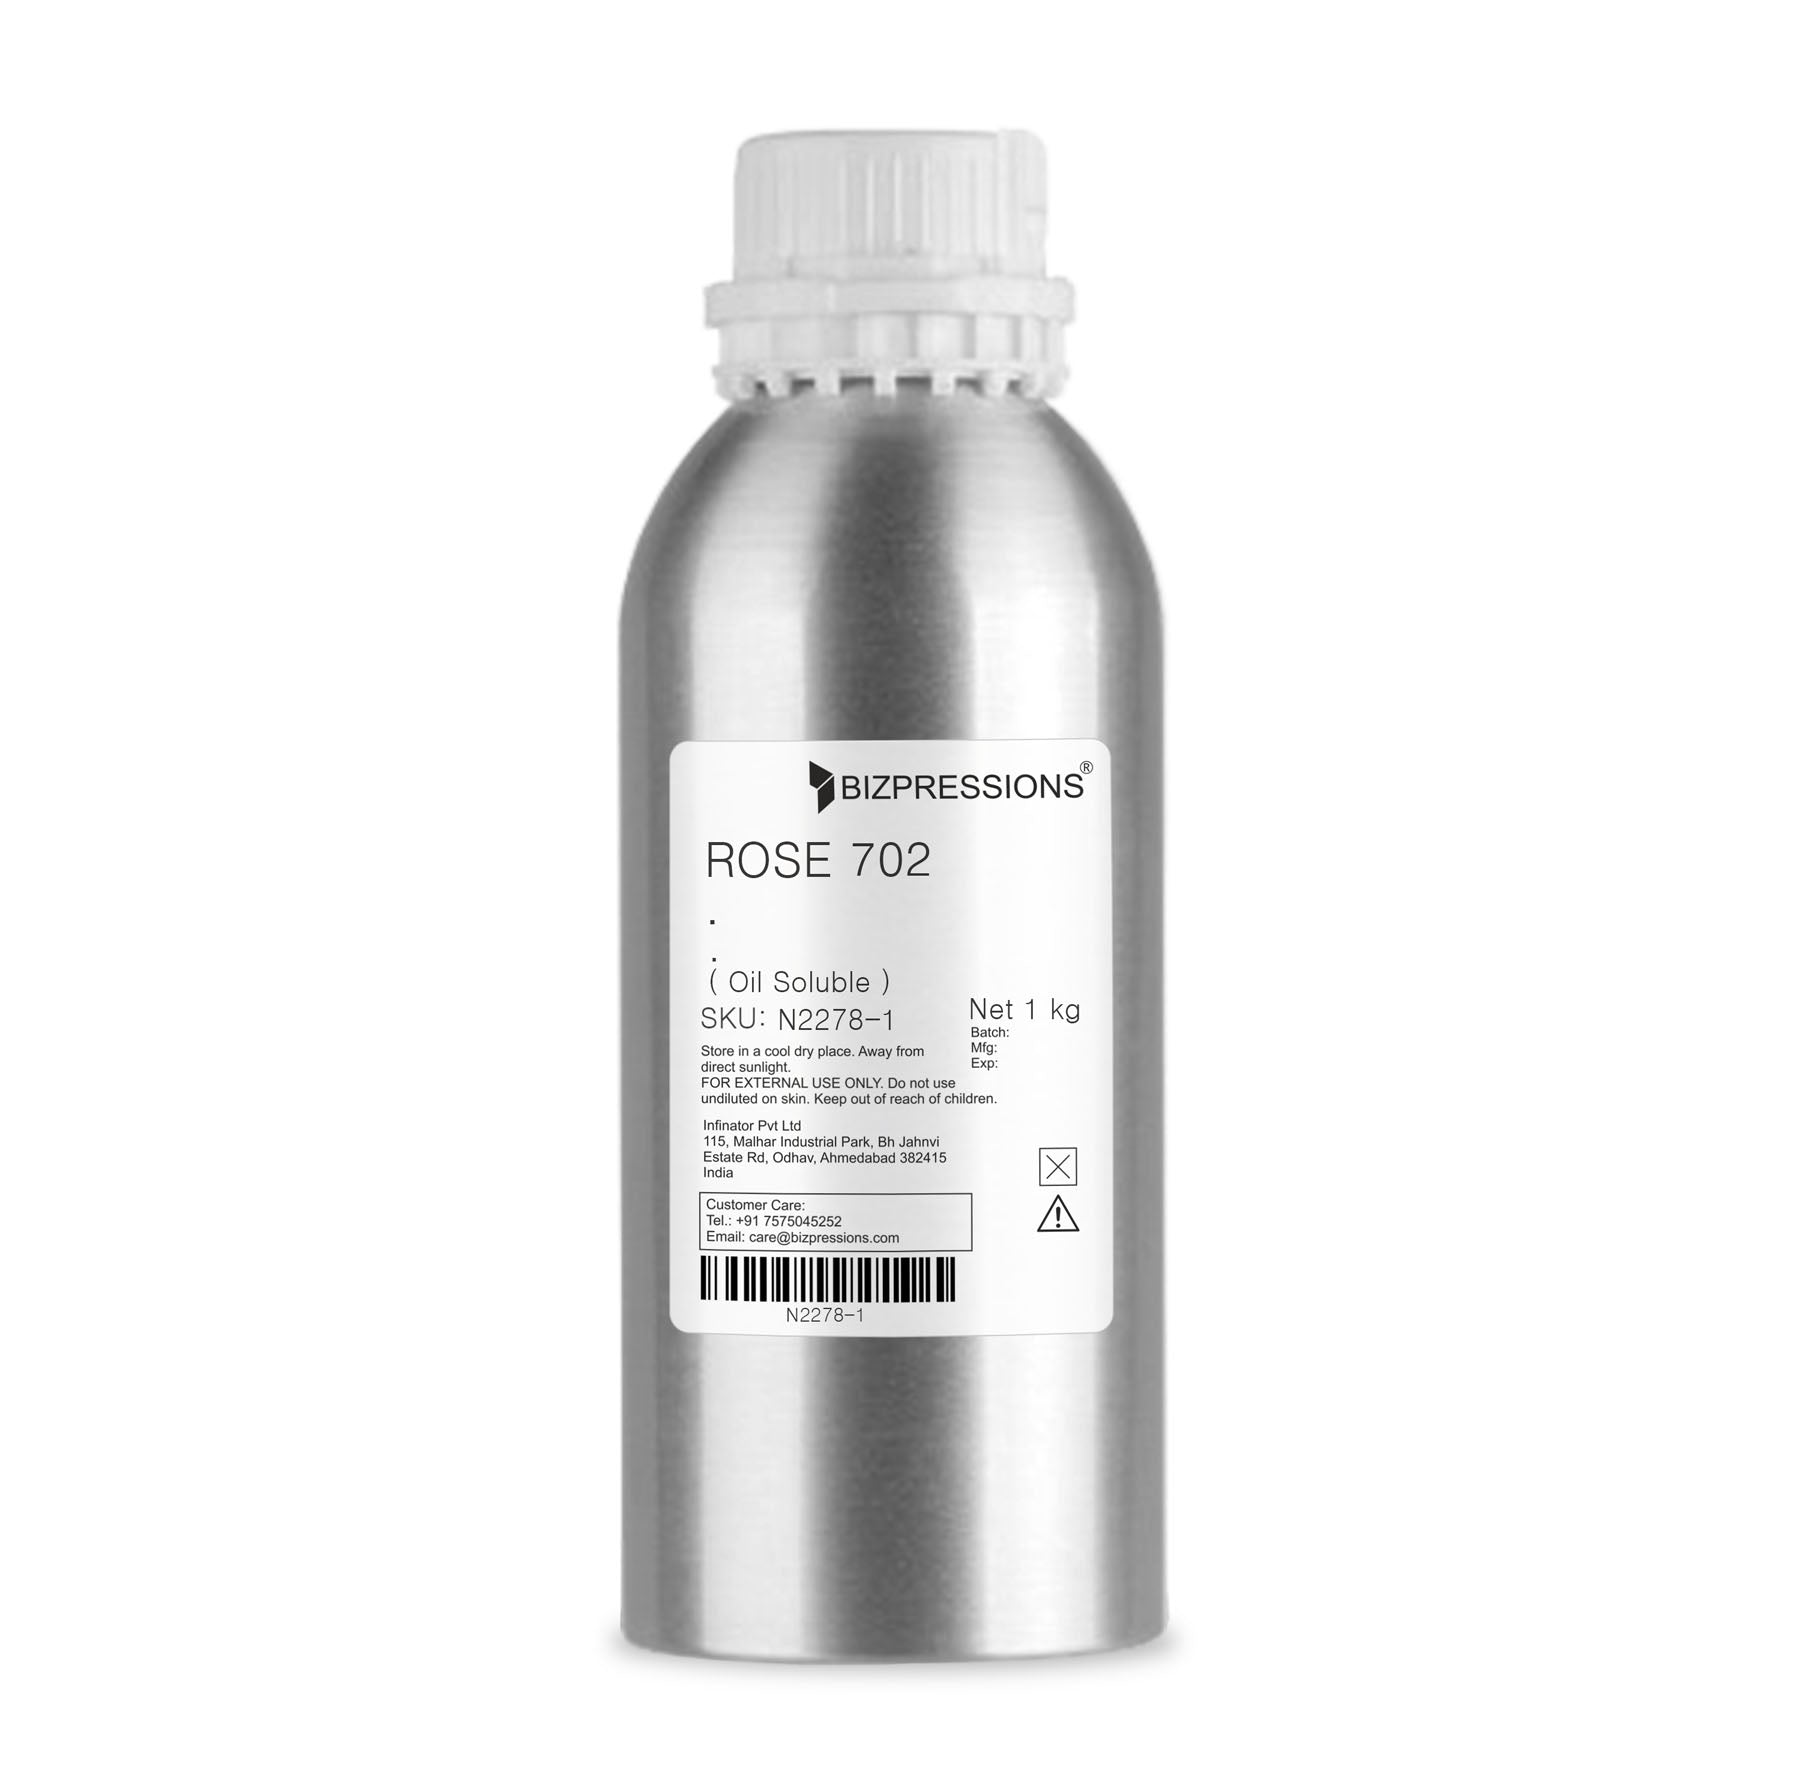 ROSE 702 - Fragrance ( Oil Soluble ) - 1 kg